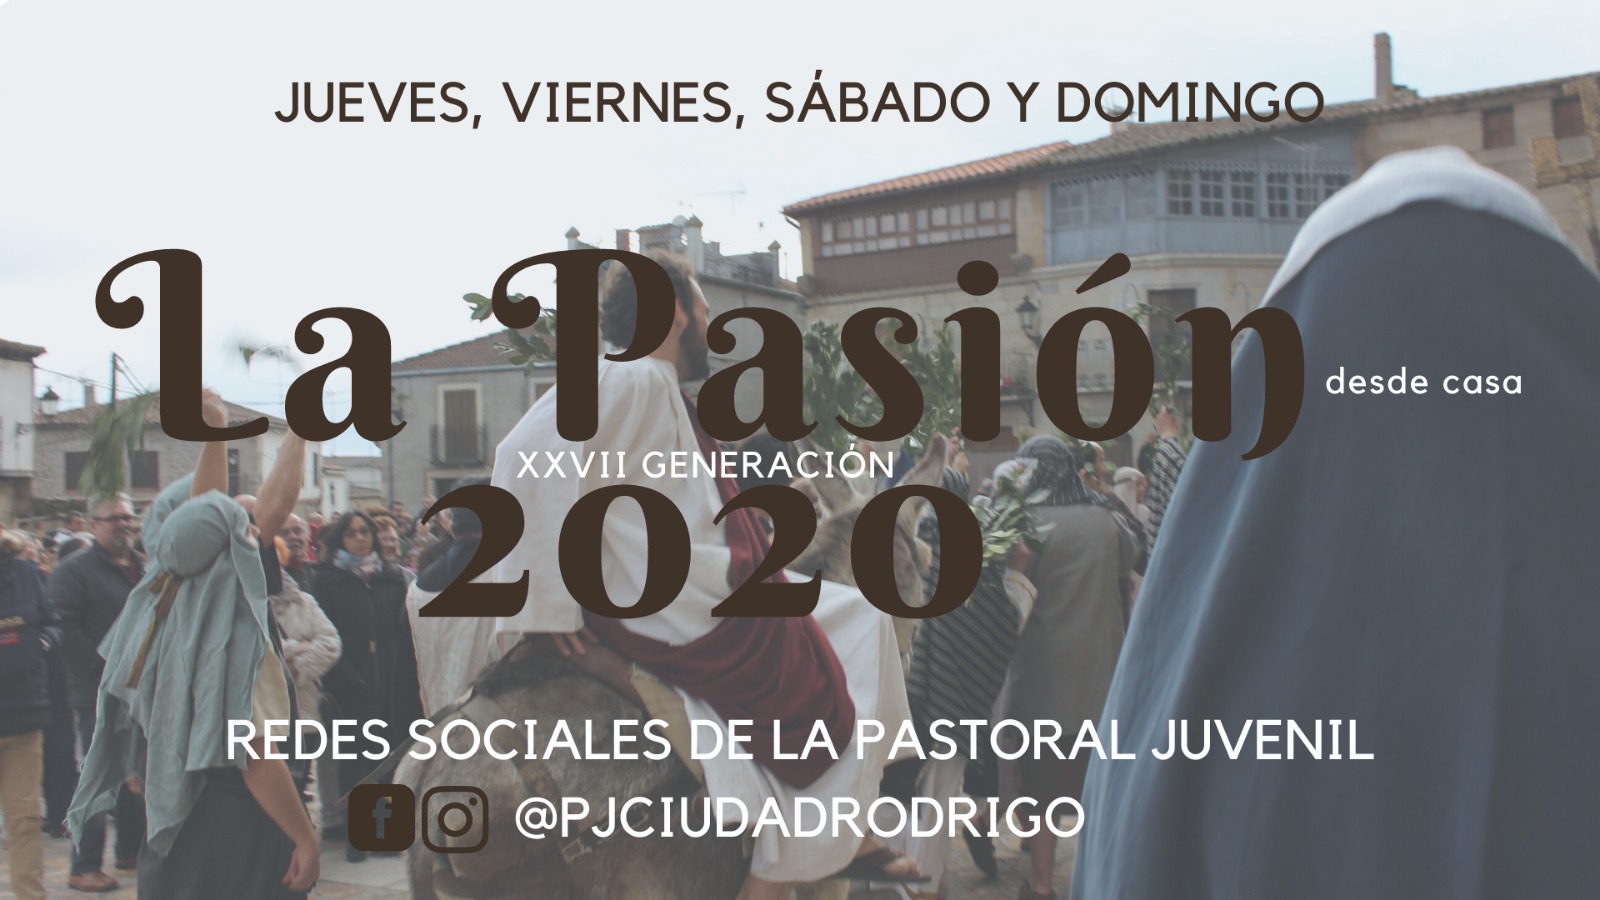 Foto 1 - La Pastoral Juvenil rememorará la Semana Santa los próximos días en sus redes sociales  